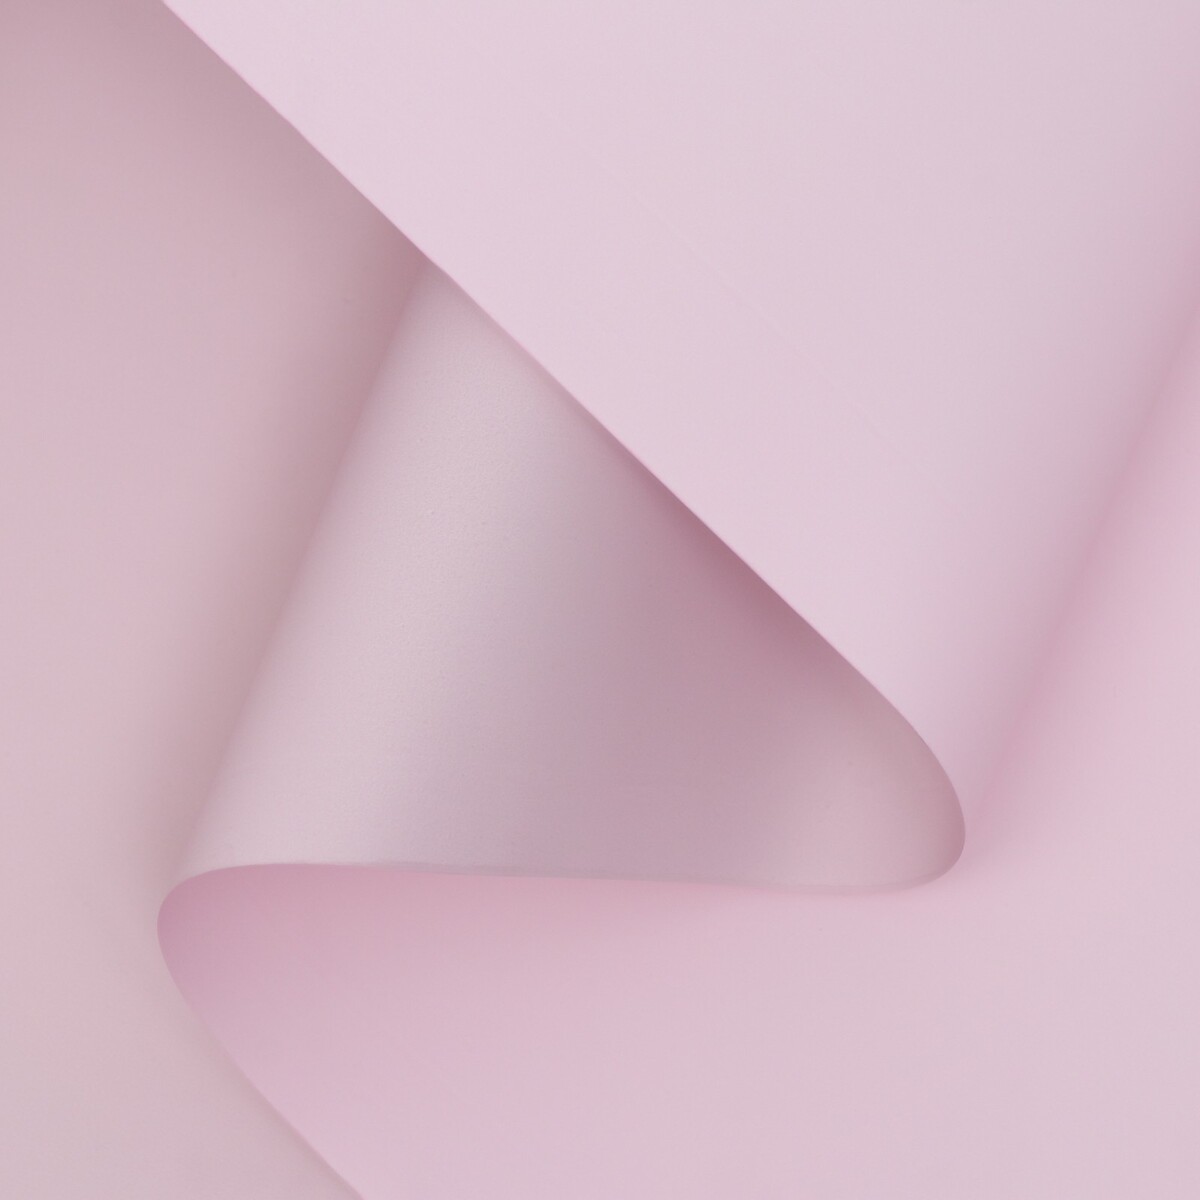 Пленка матовая двухсторонняя , пастельная серия, 65 мкм пастельный, розовый, 0,5 x 10 м пленка матовая двухсторонняя пастельная серия 65 мкм пастельный розовый 0 5 x 10 м